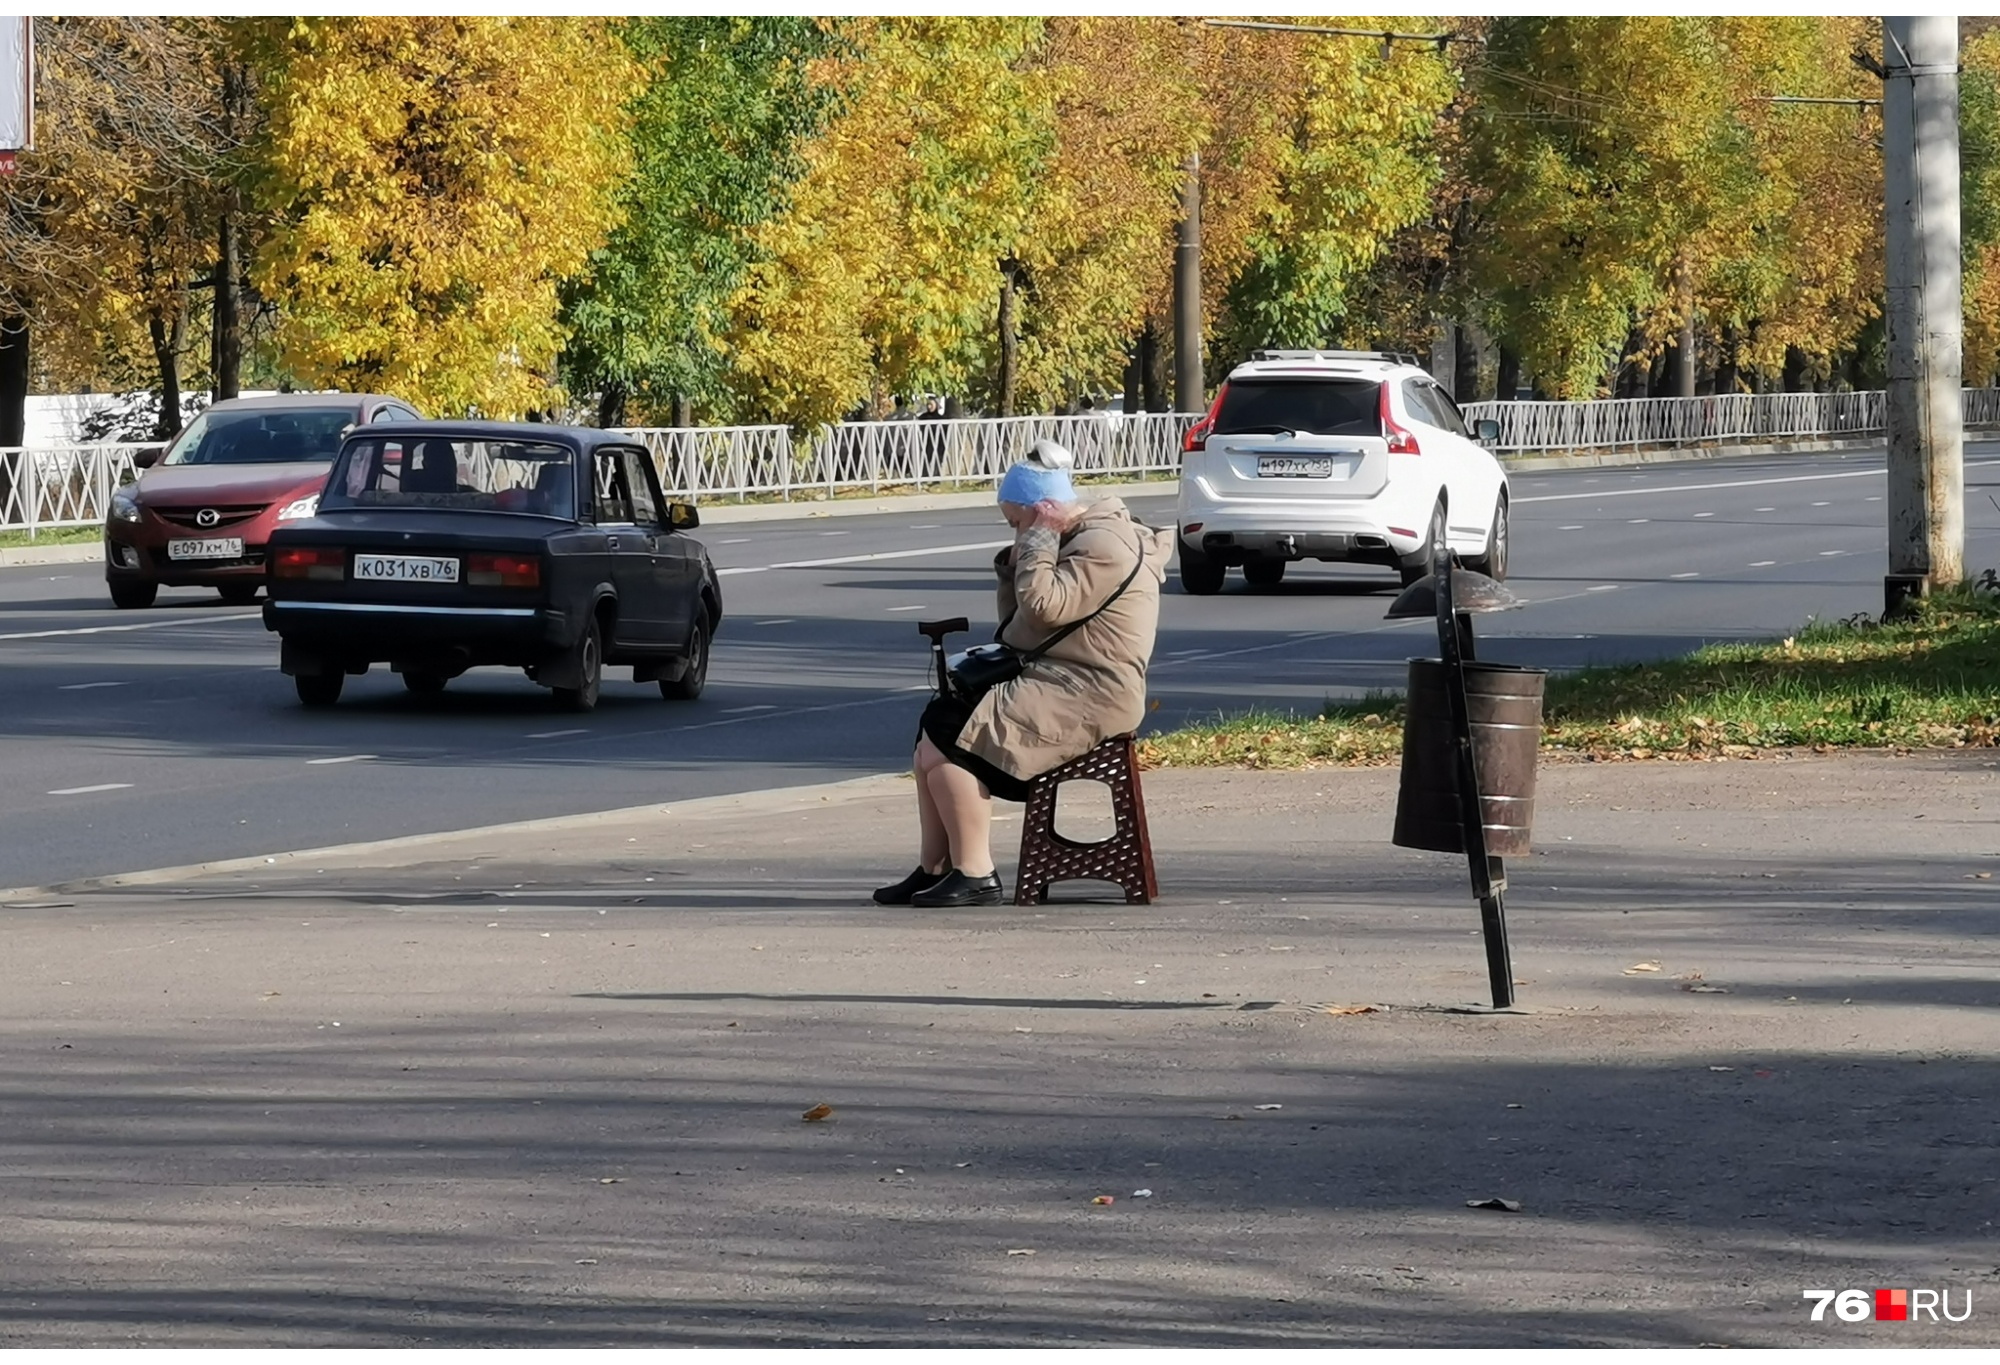 «Стыдно жить в этой стране»: в Рыбинске бабушка пришла на остановку со своей табуреткой. Фото